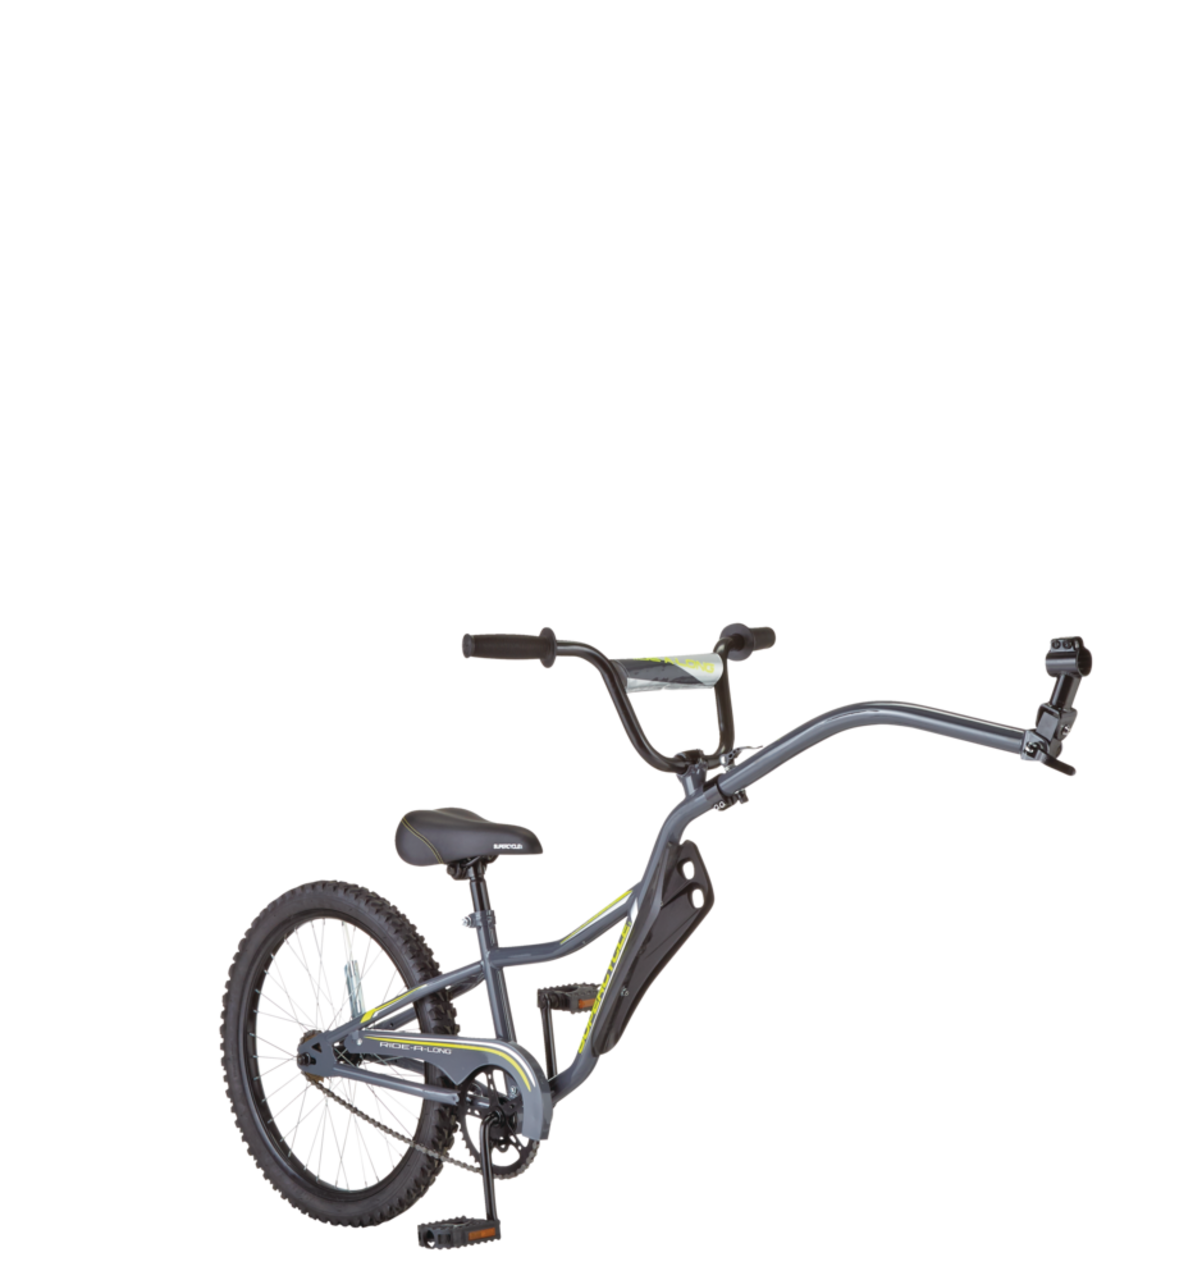 Accessoires de vélo enfant : Canne de guidage, sonnette, stabilisateur